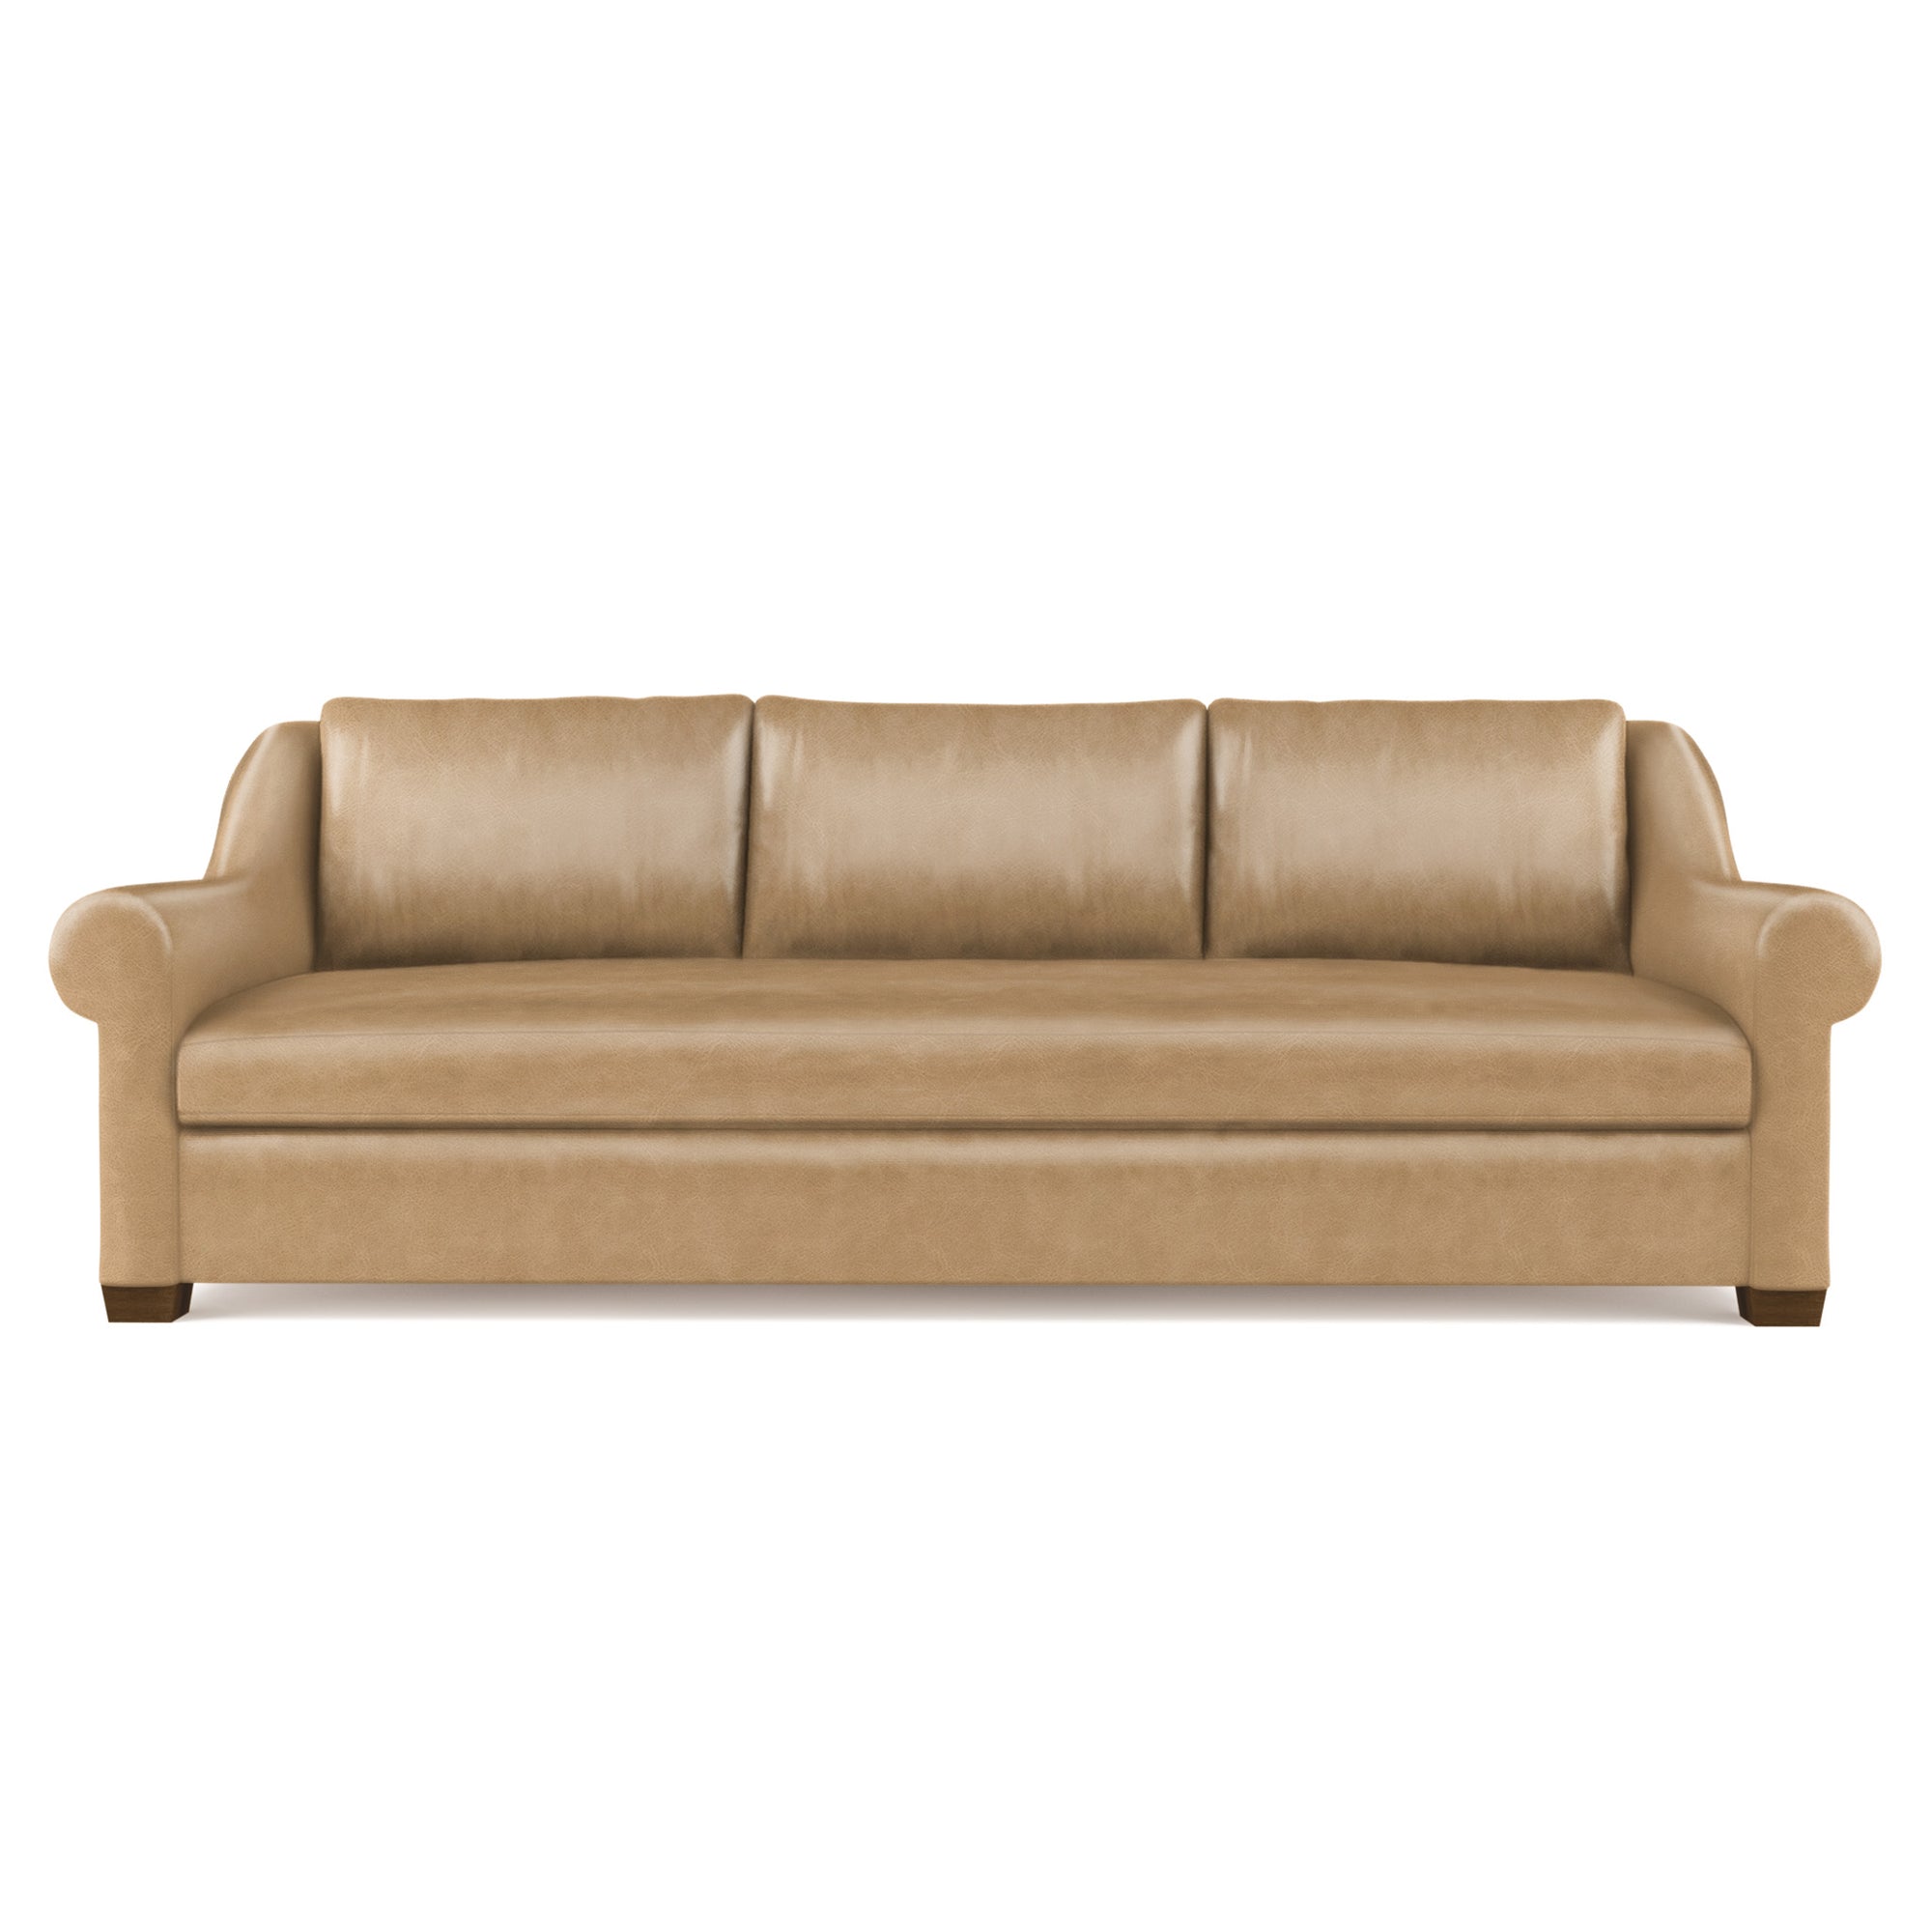 Thompson Sofa - Marzipan Vintage Leather